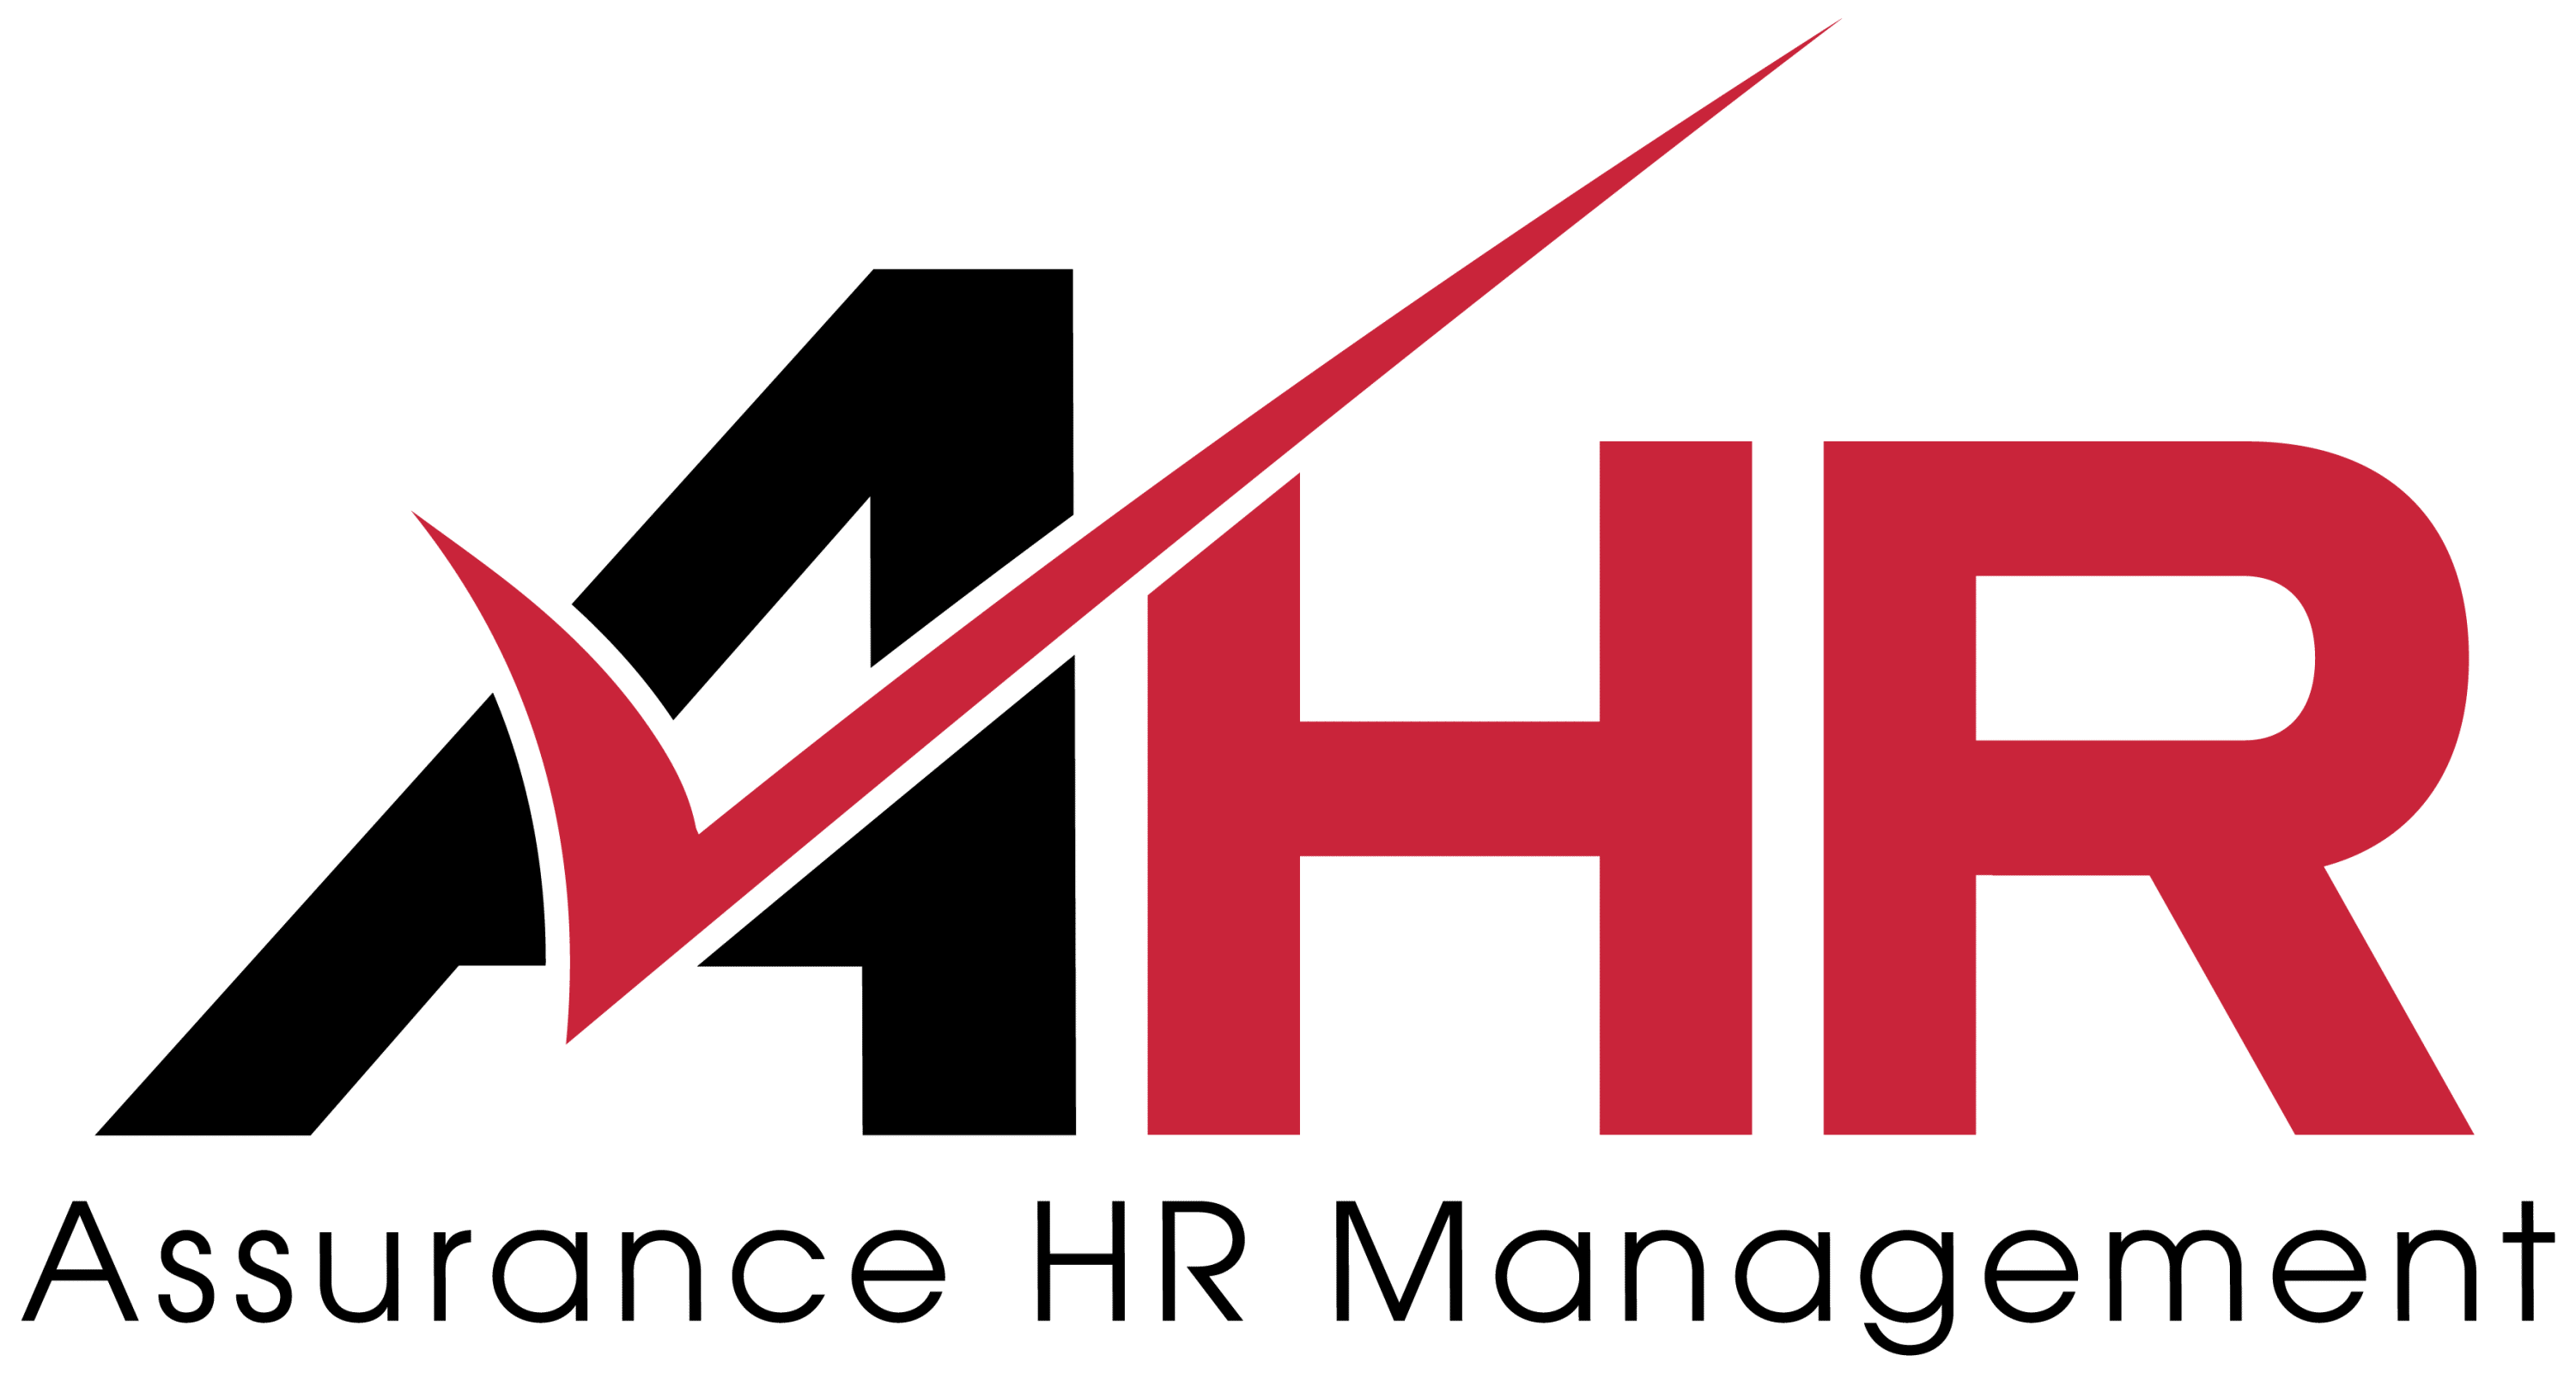 Assurance HR Logo